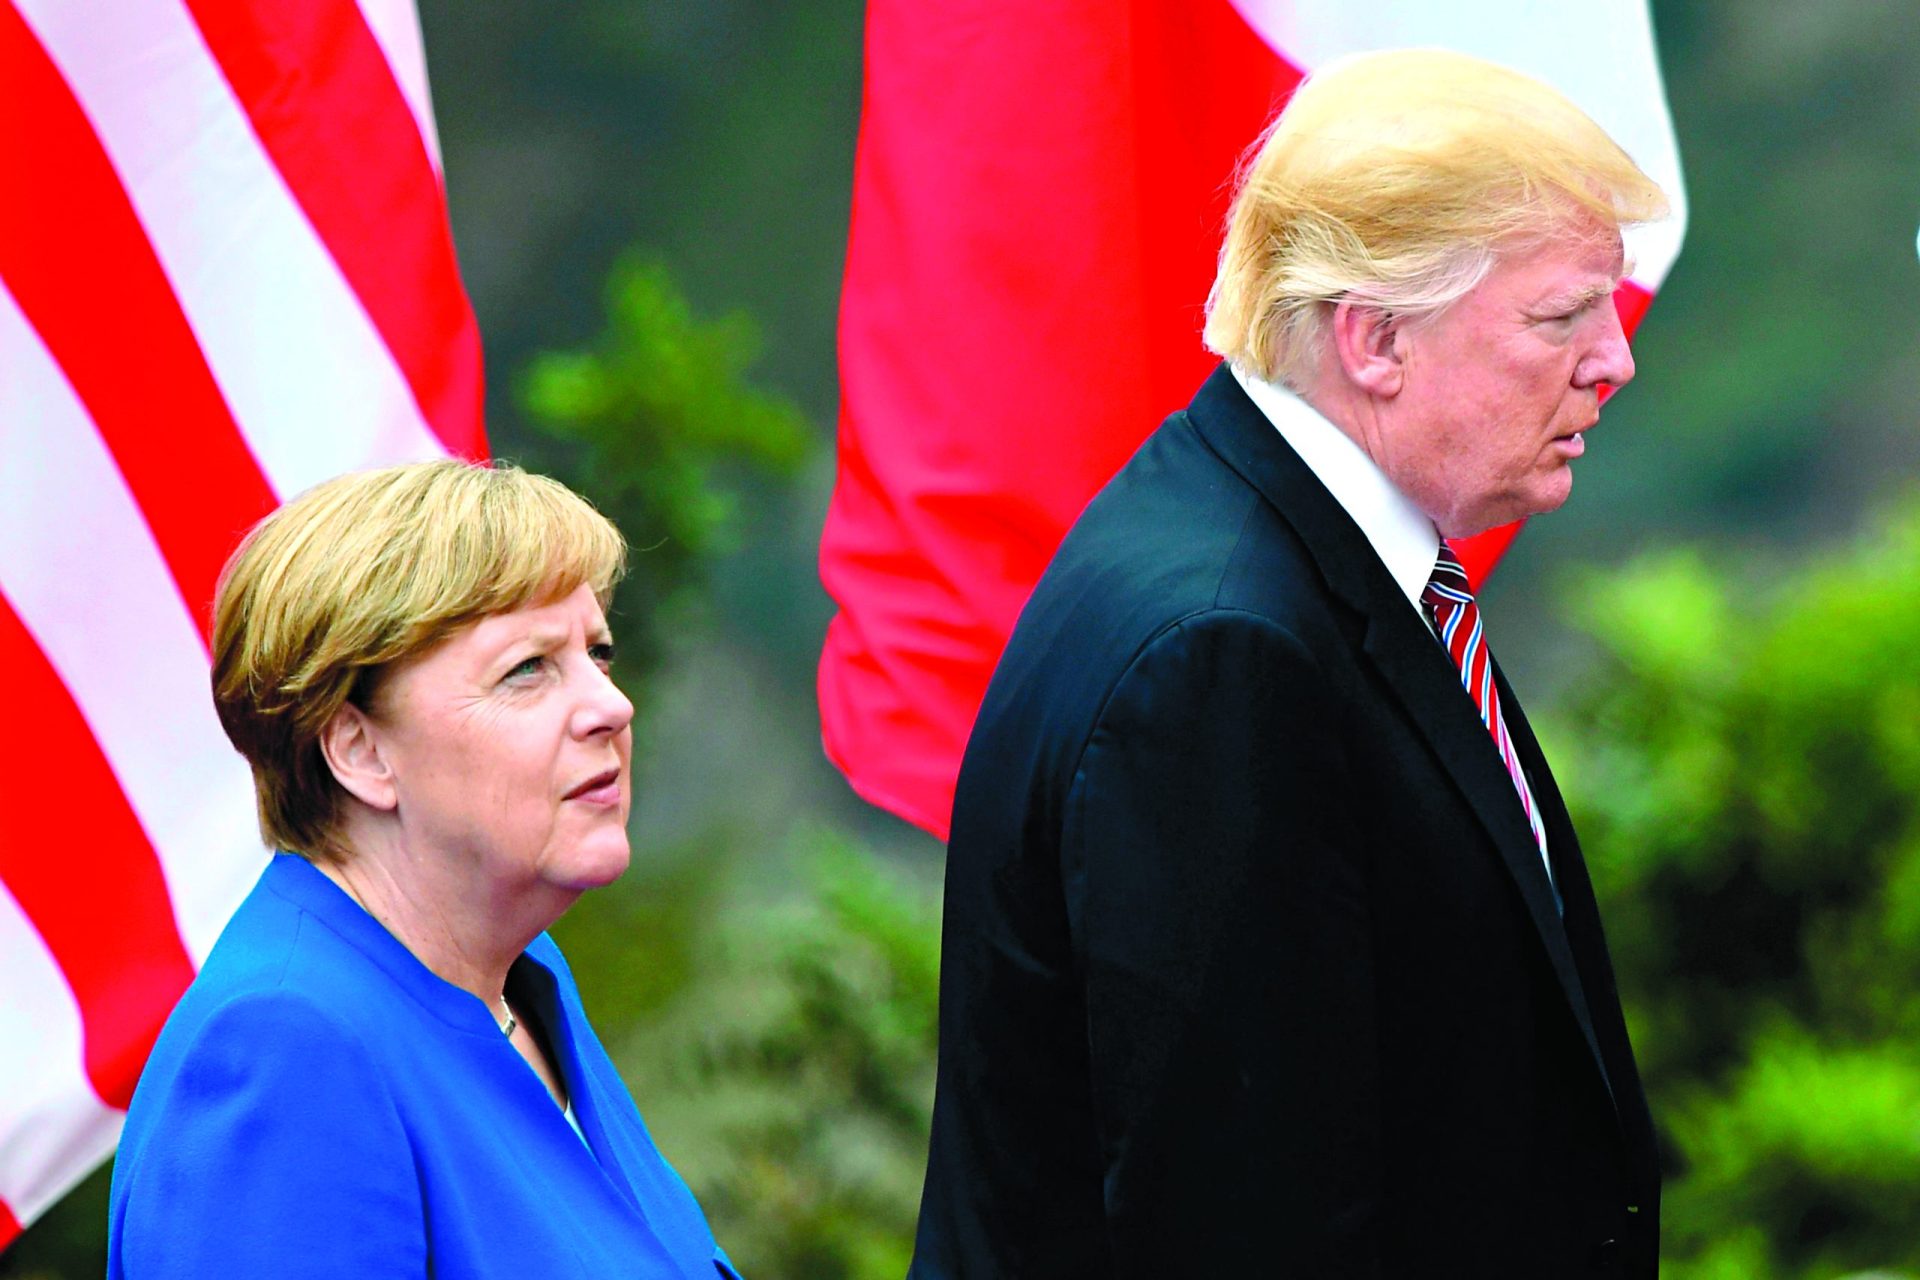 Diplomacia. A Europa vê-se a sós. Ou quase